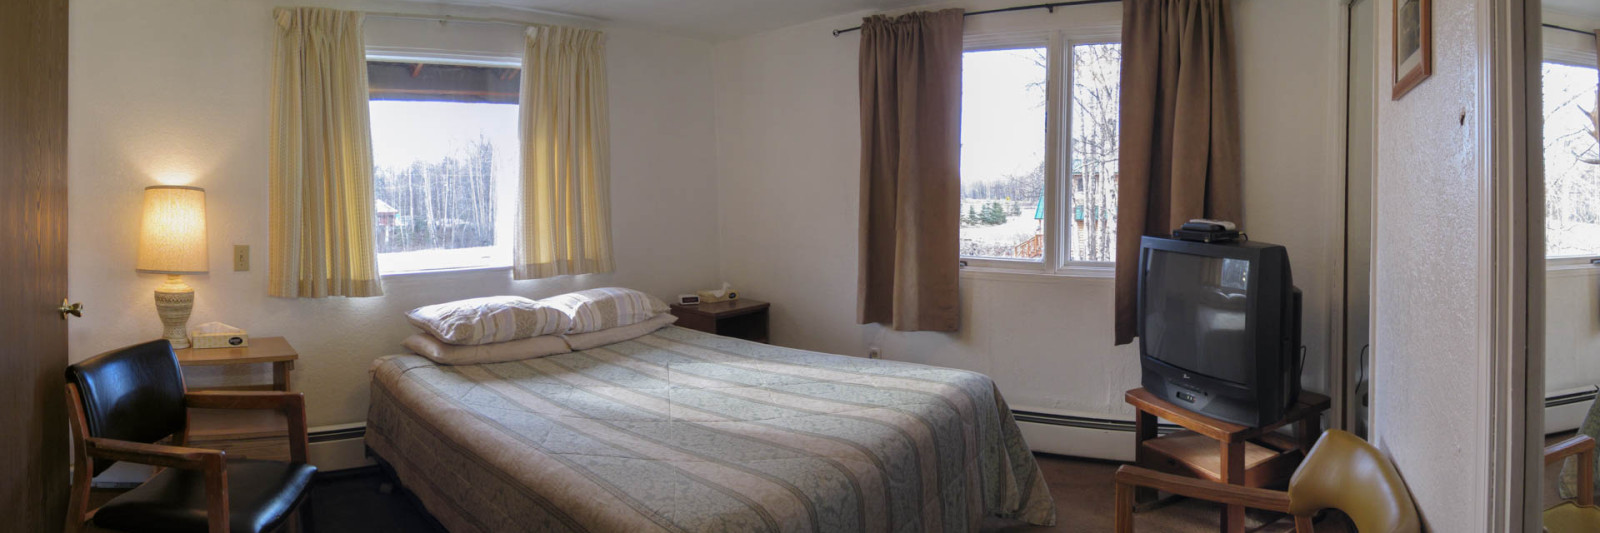 Suite Bedroom with Queen Bed